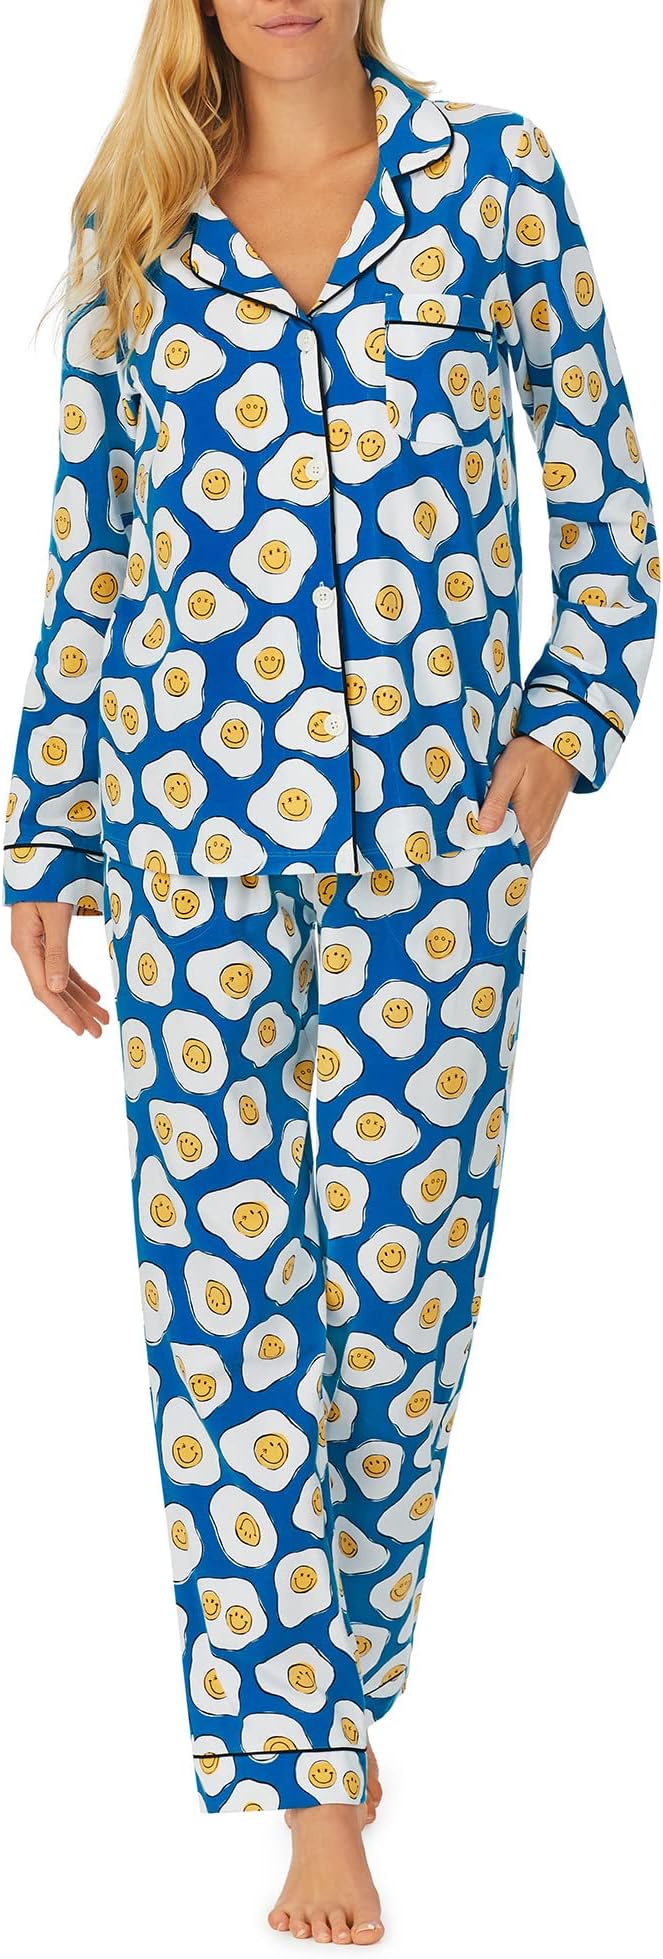 paolo nutini sunny side up lp Zappos Print Lab: классический пижамный комплект с длинными рукавами Sunny Side Up Bedhead PJs, цвет Sunny Side Up